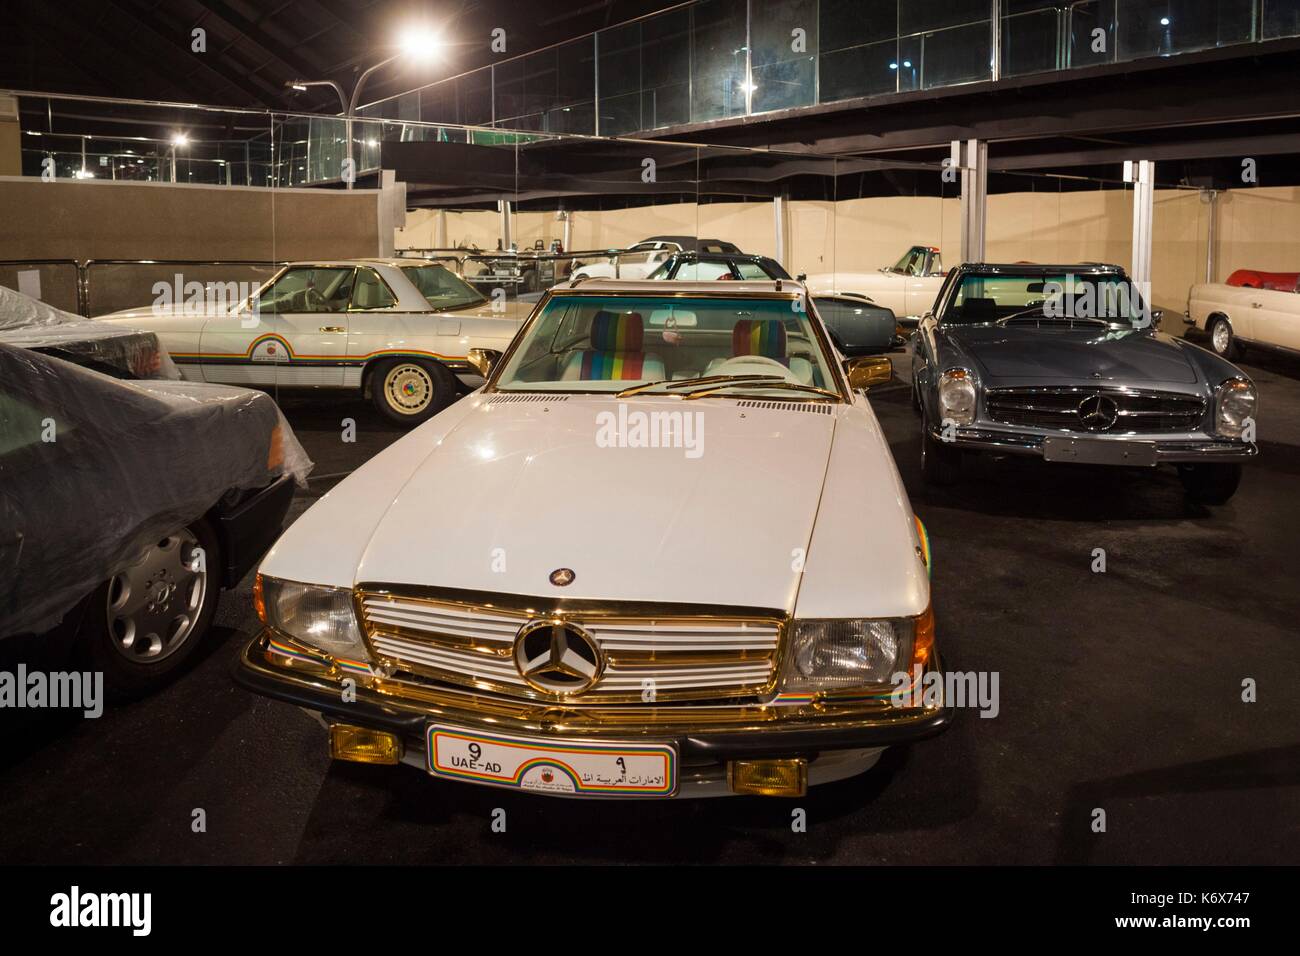 La fastuosa colección de coches de Mohhamed Al-Kubaisi, el joven